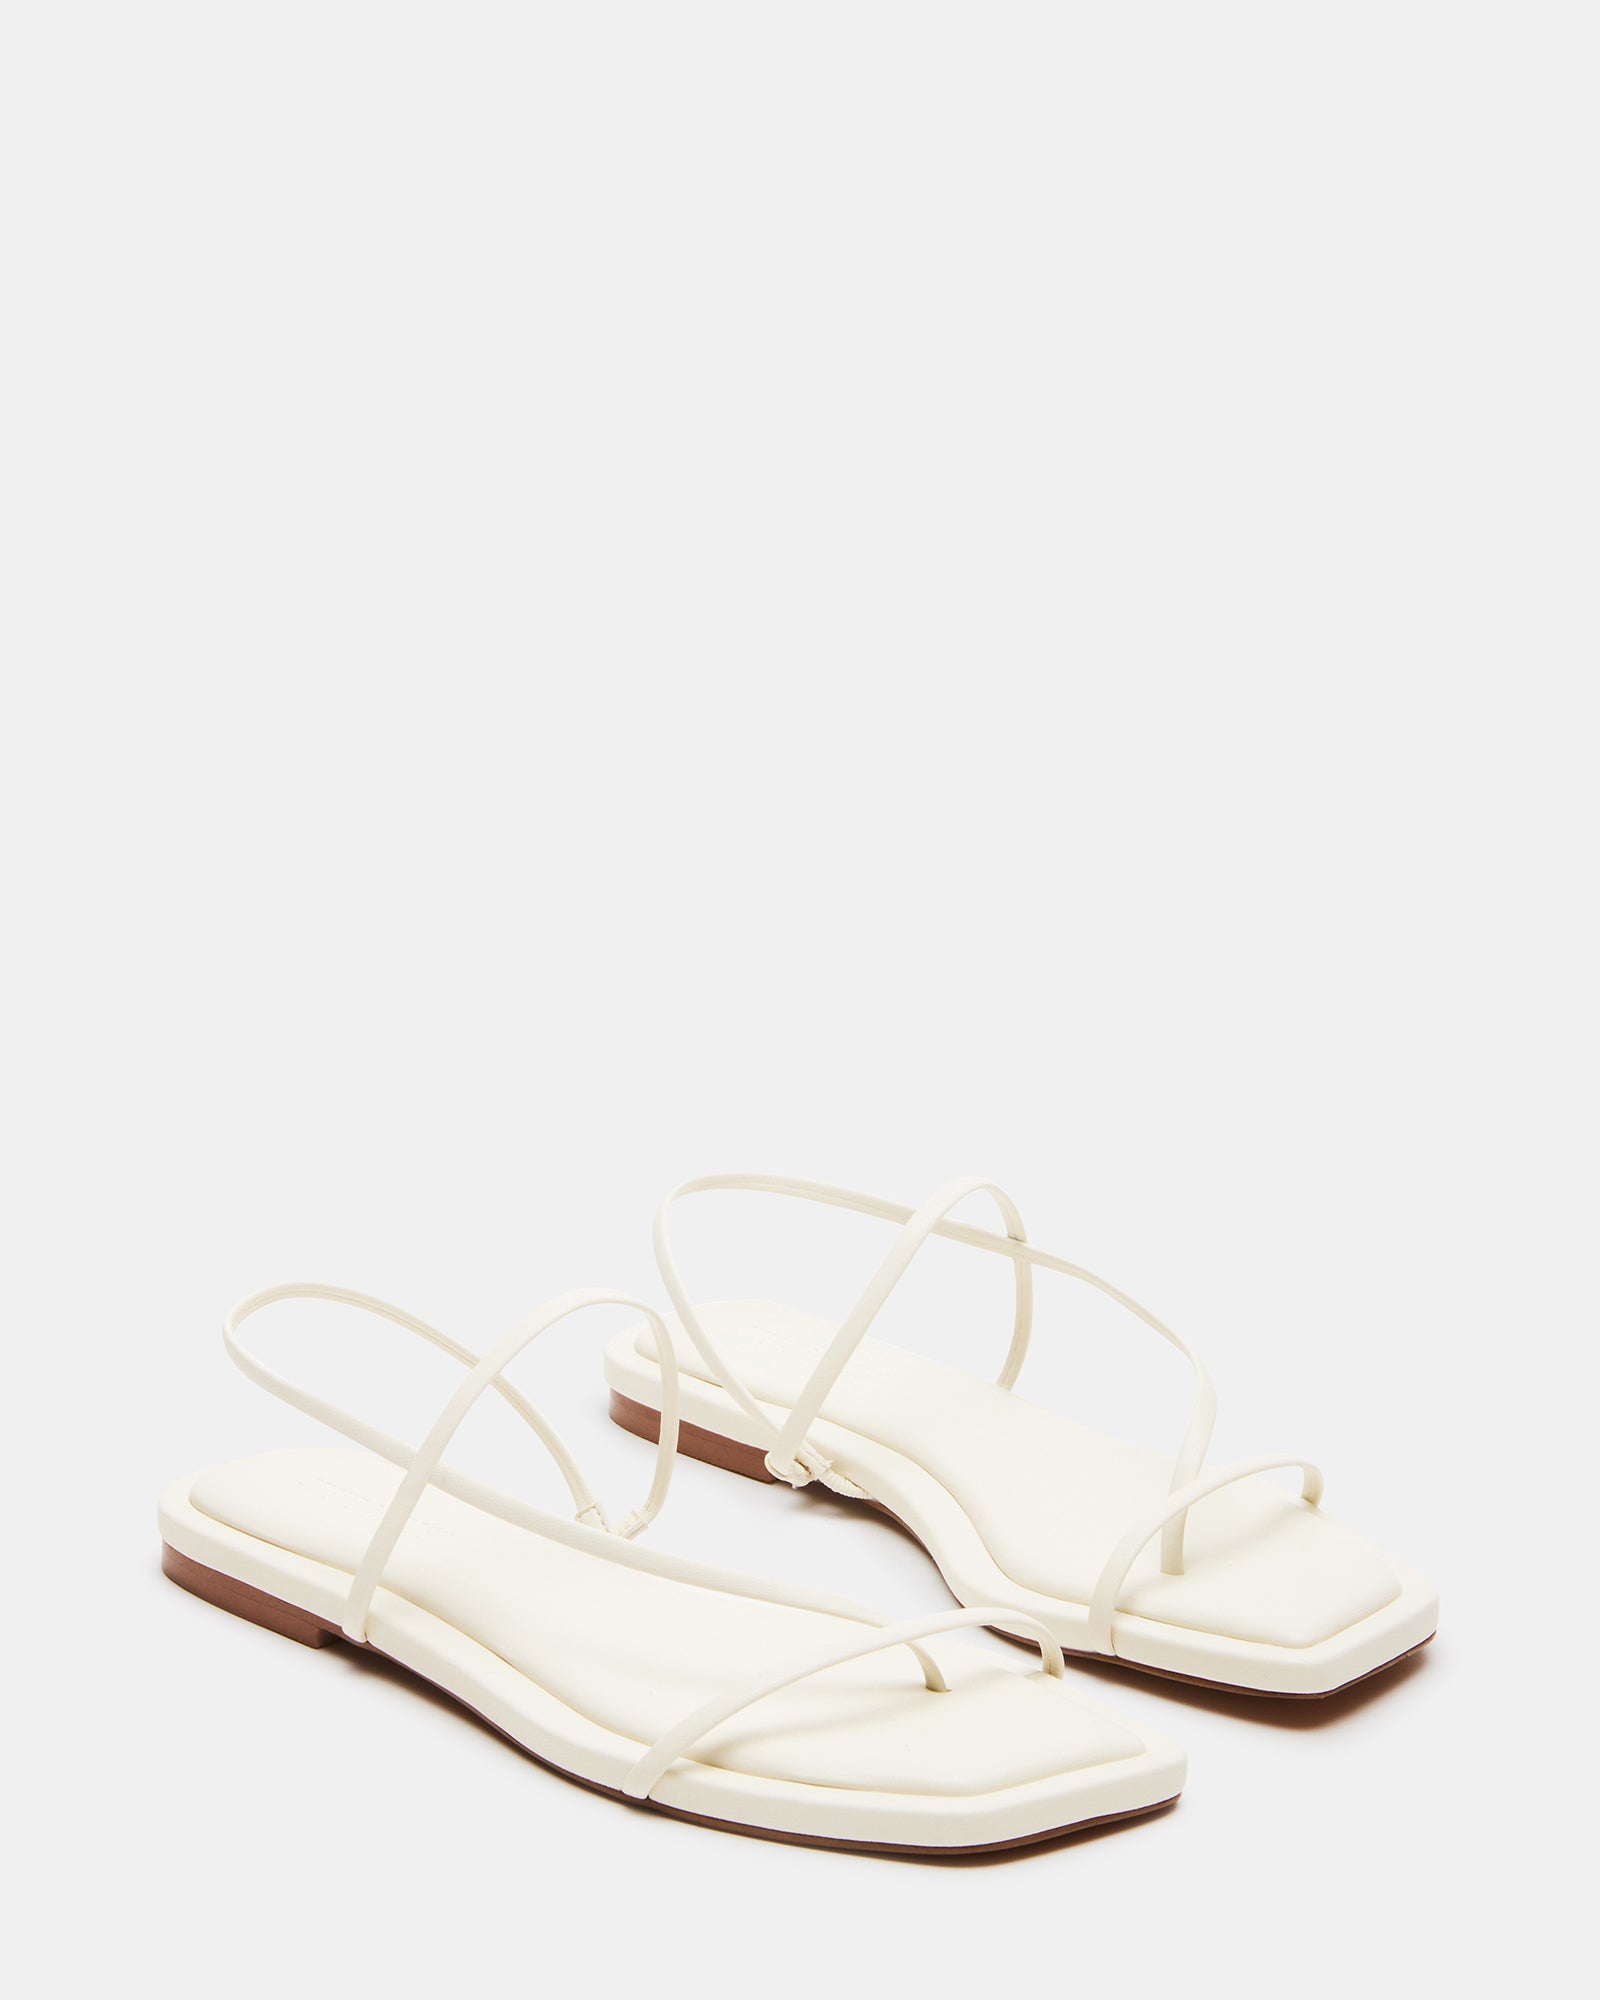 LYNLEY White Strappy Square Toe Sandal | Women's Sandals – Steve Madden